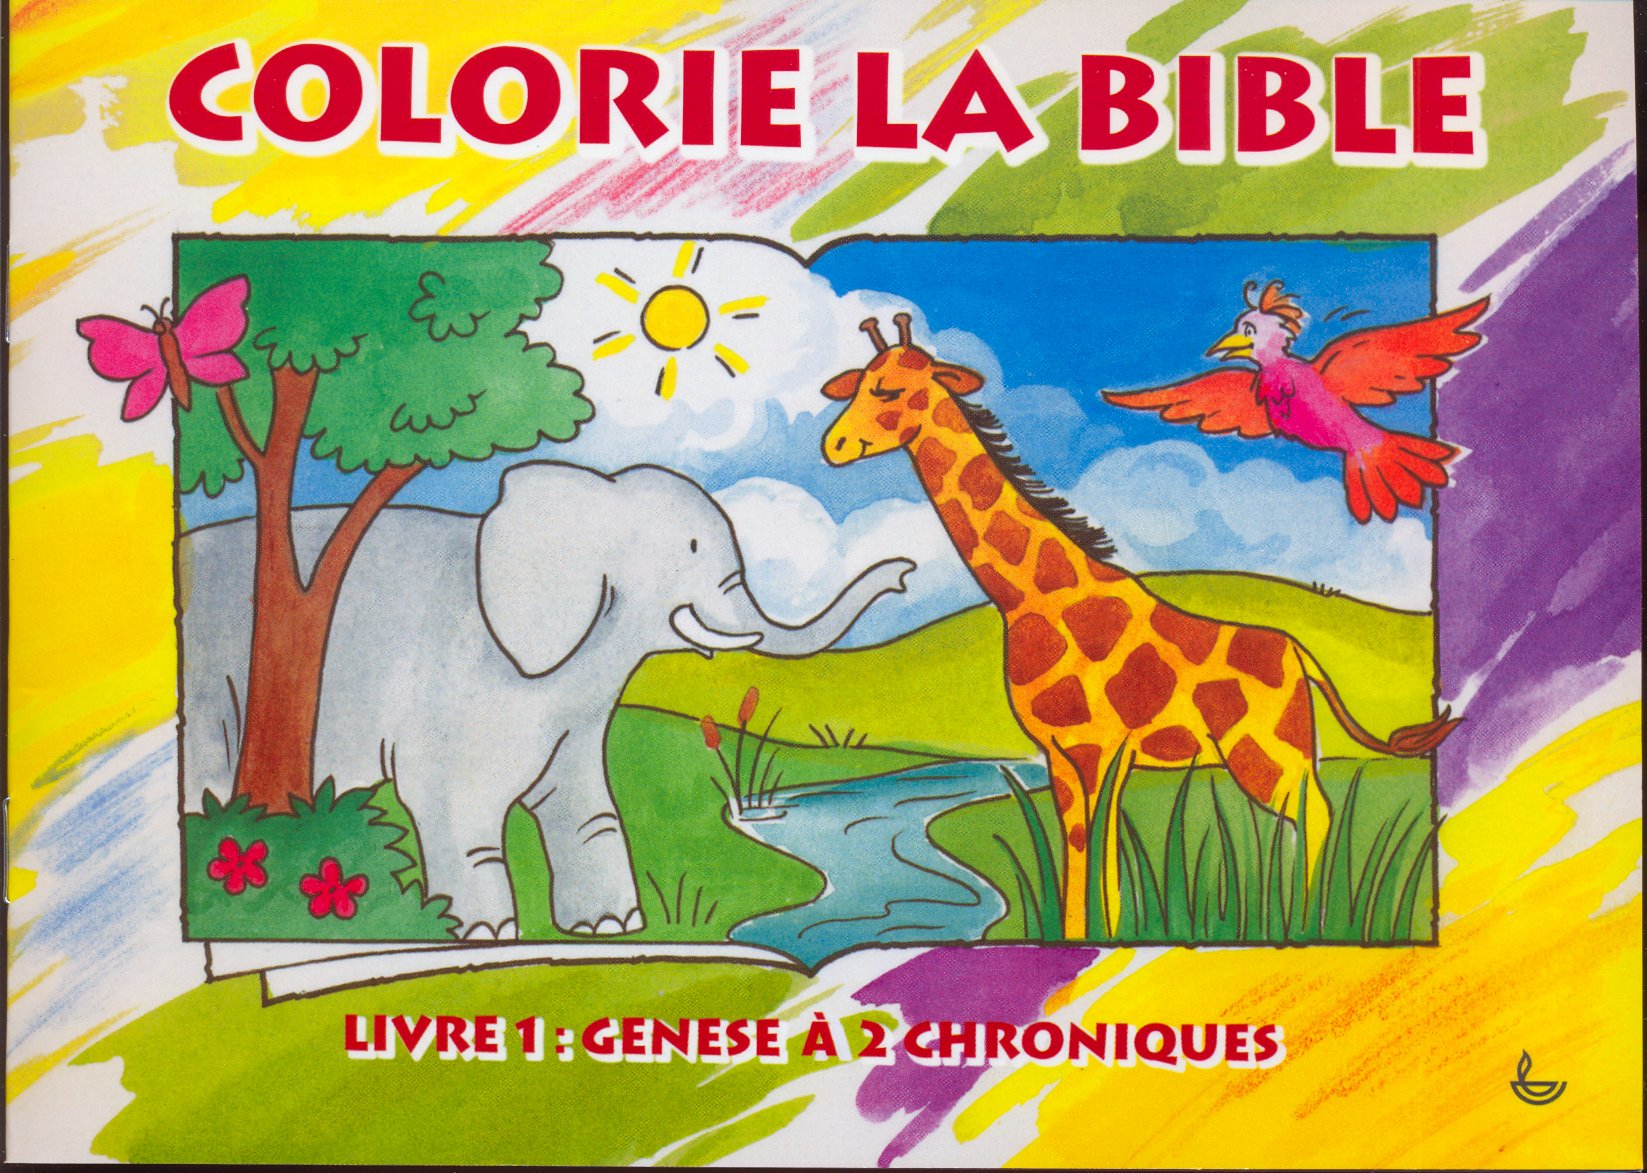 Genèse à 2 Chroniques - Colorie la Bible, livre 1